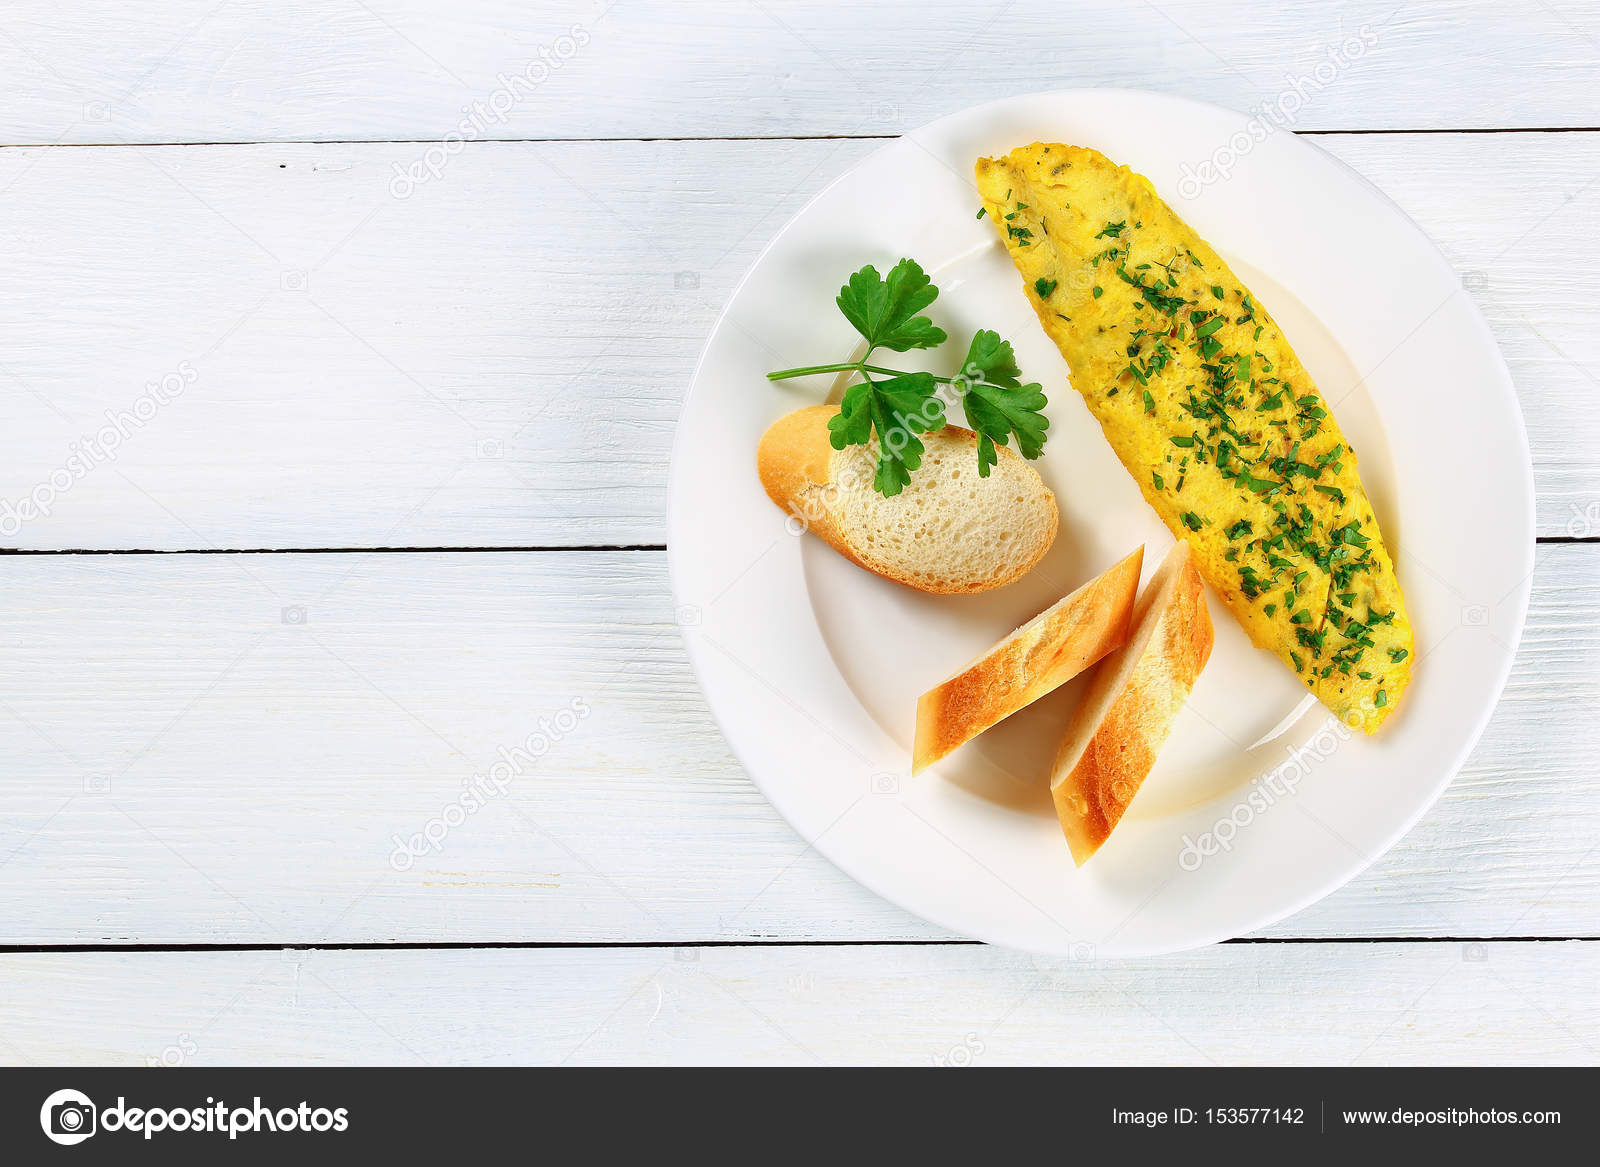 Leckeres französisches Omelett mit Gemüse - Stockfotografie ...